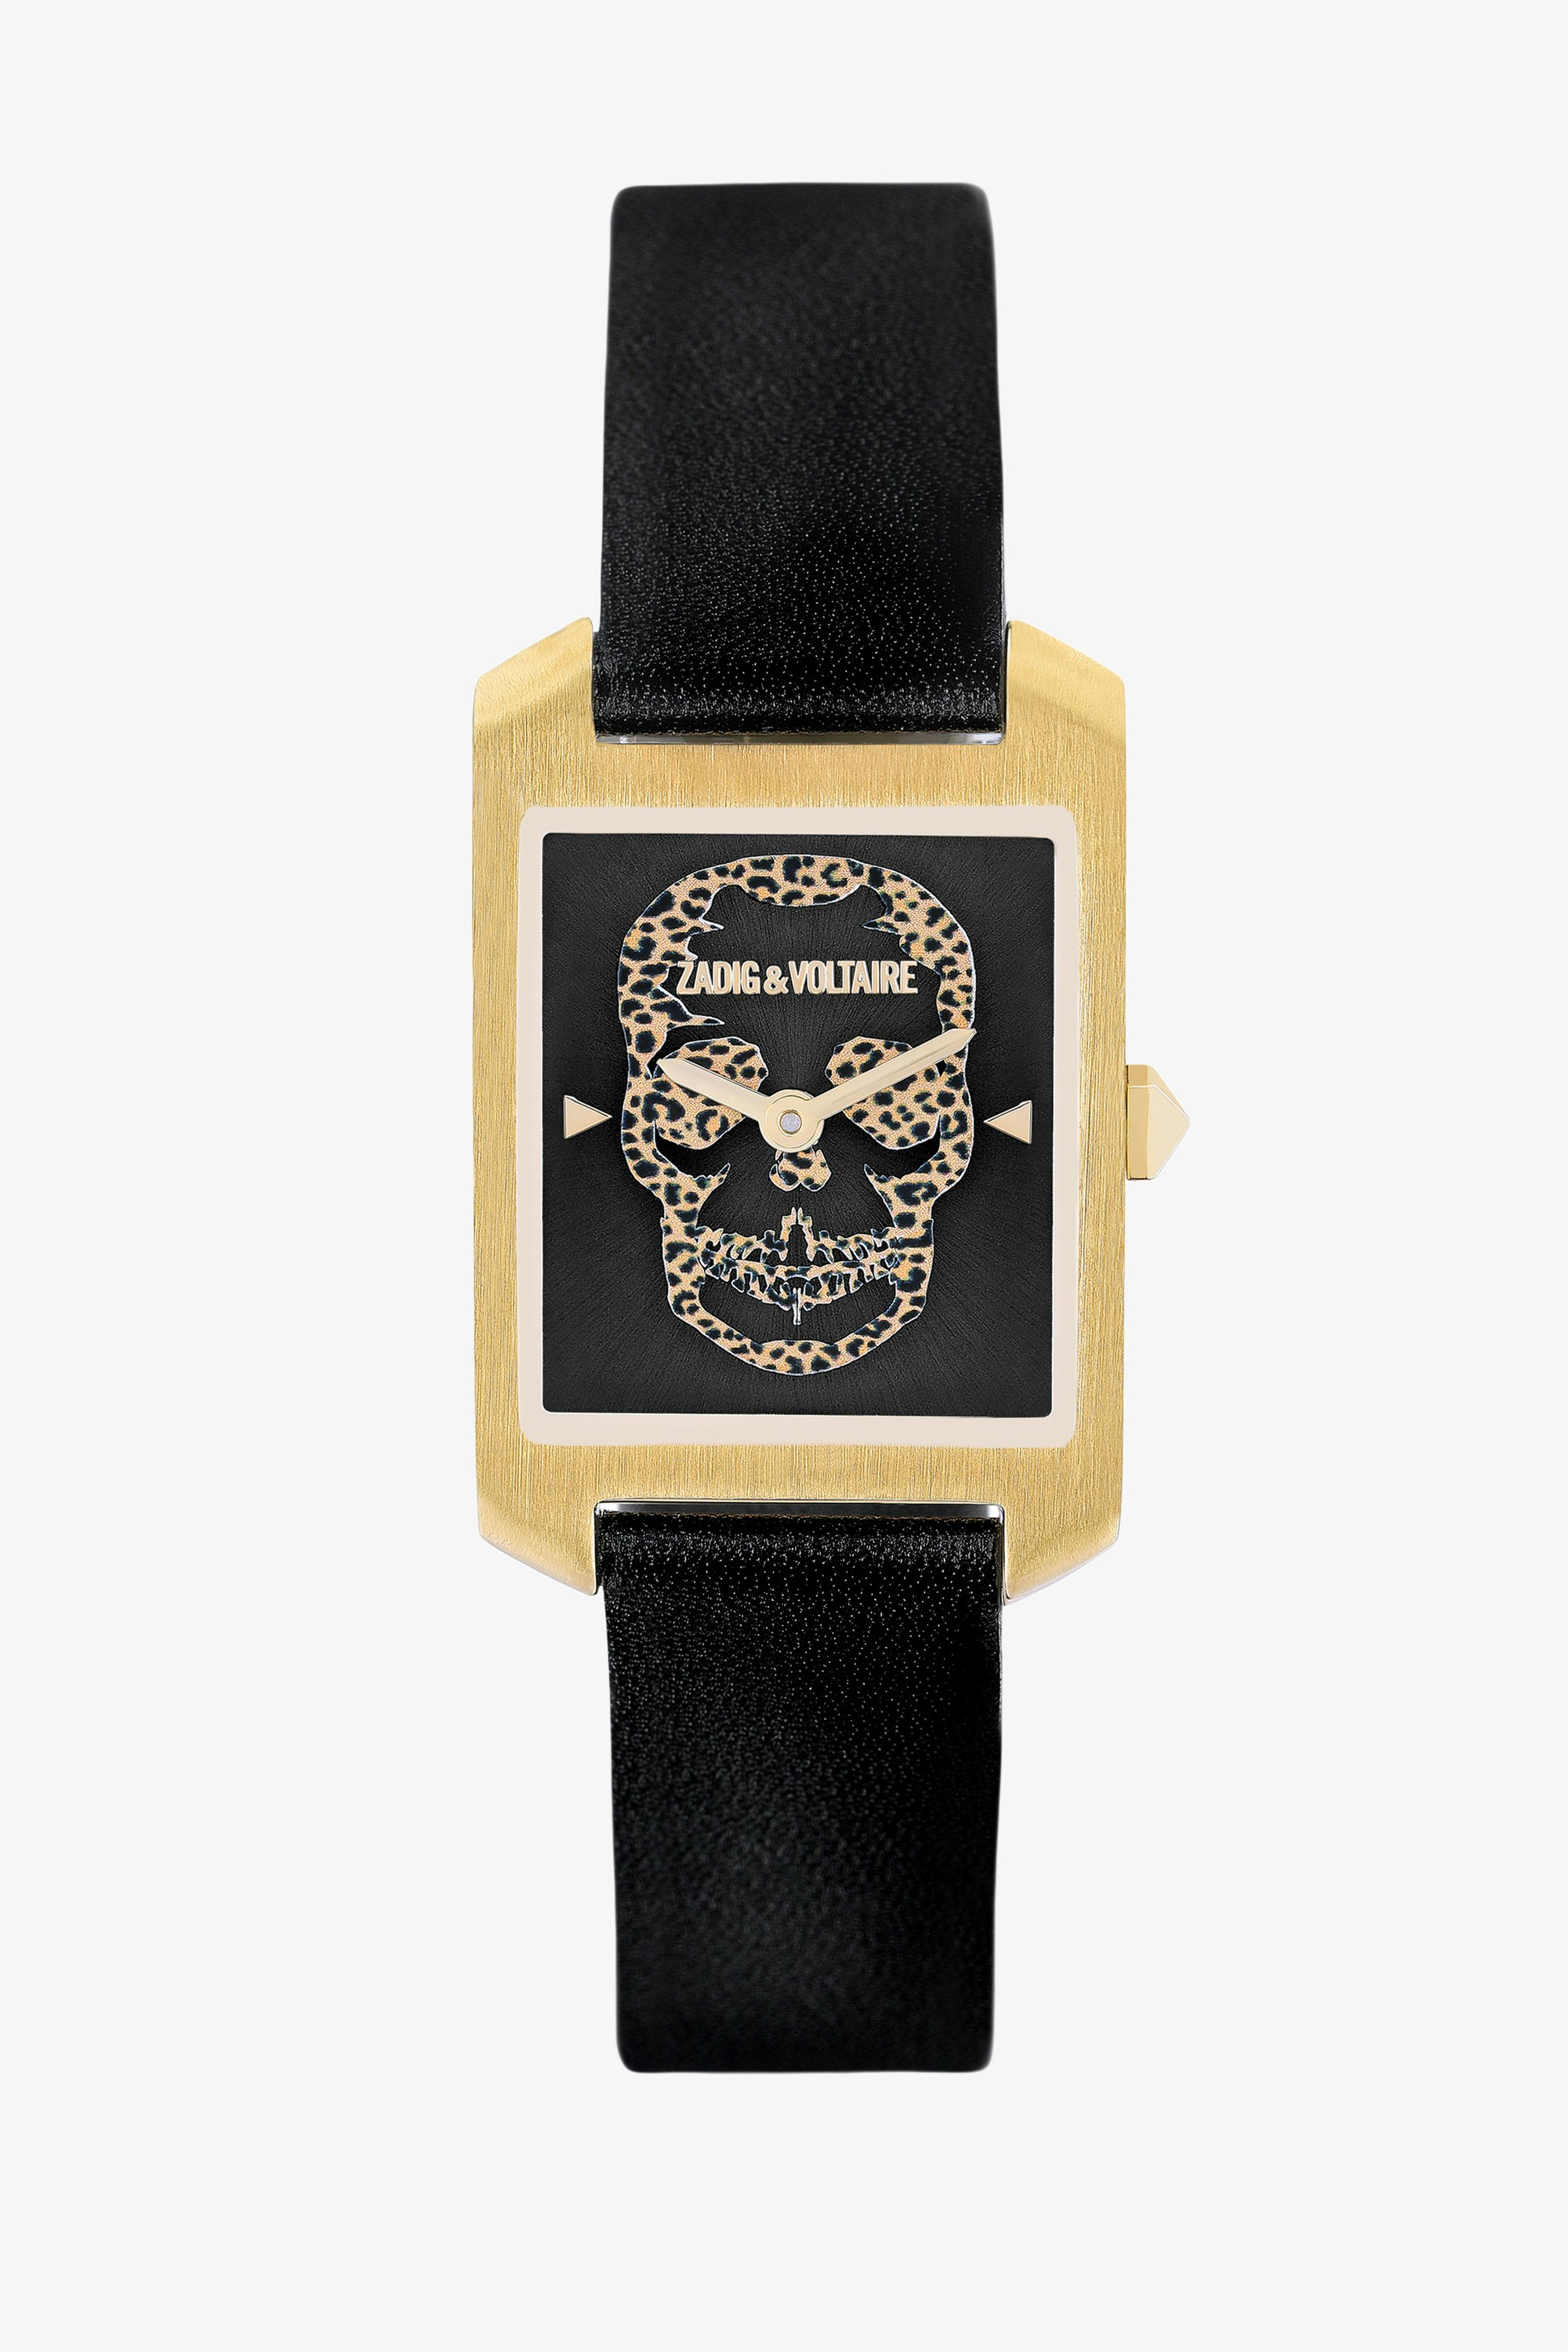 Reloj Dial Leo Timeline  Reloj para mujer con esfera rectangular dorada y fondo de calavera con estampado de leopardo, provisto de una correa de piel negra